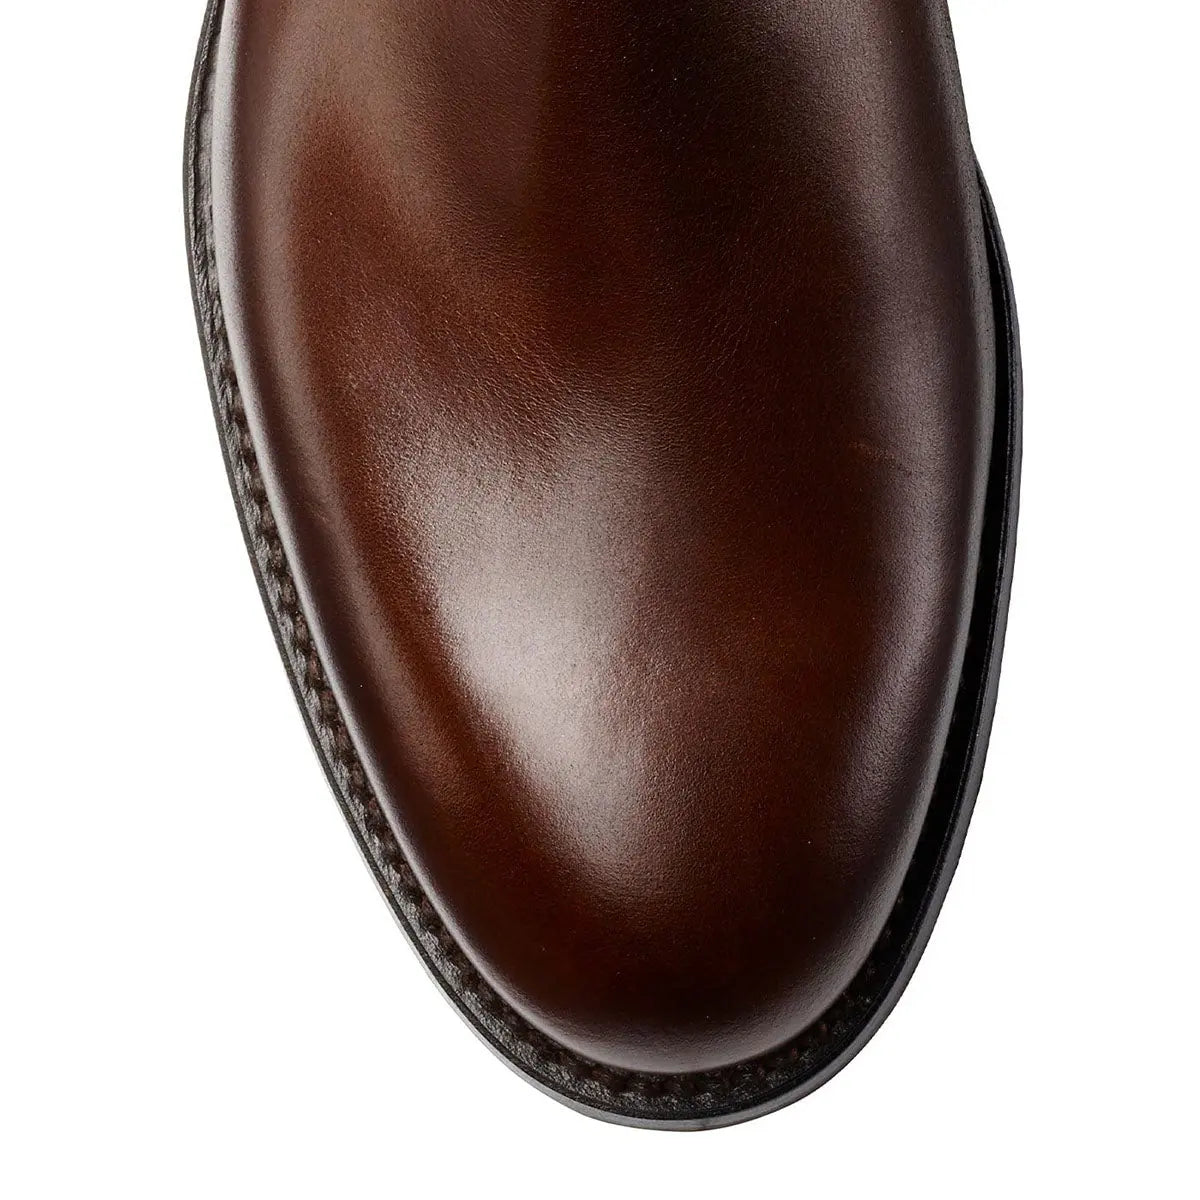 Chelsea 5 Dark Brown Calf Leather Boots  Crockett & Jones   